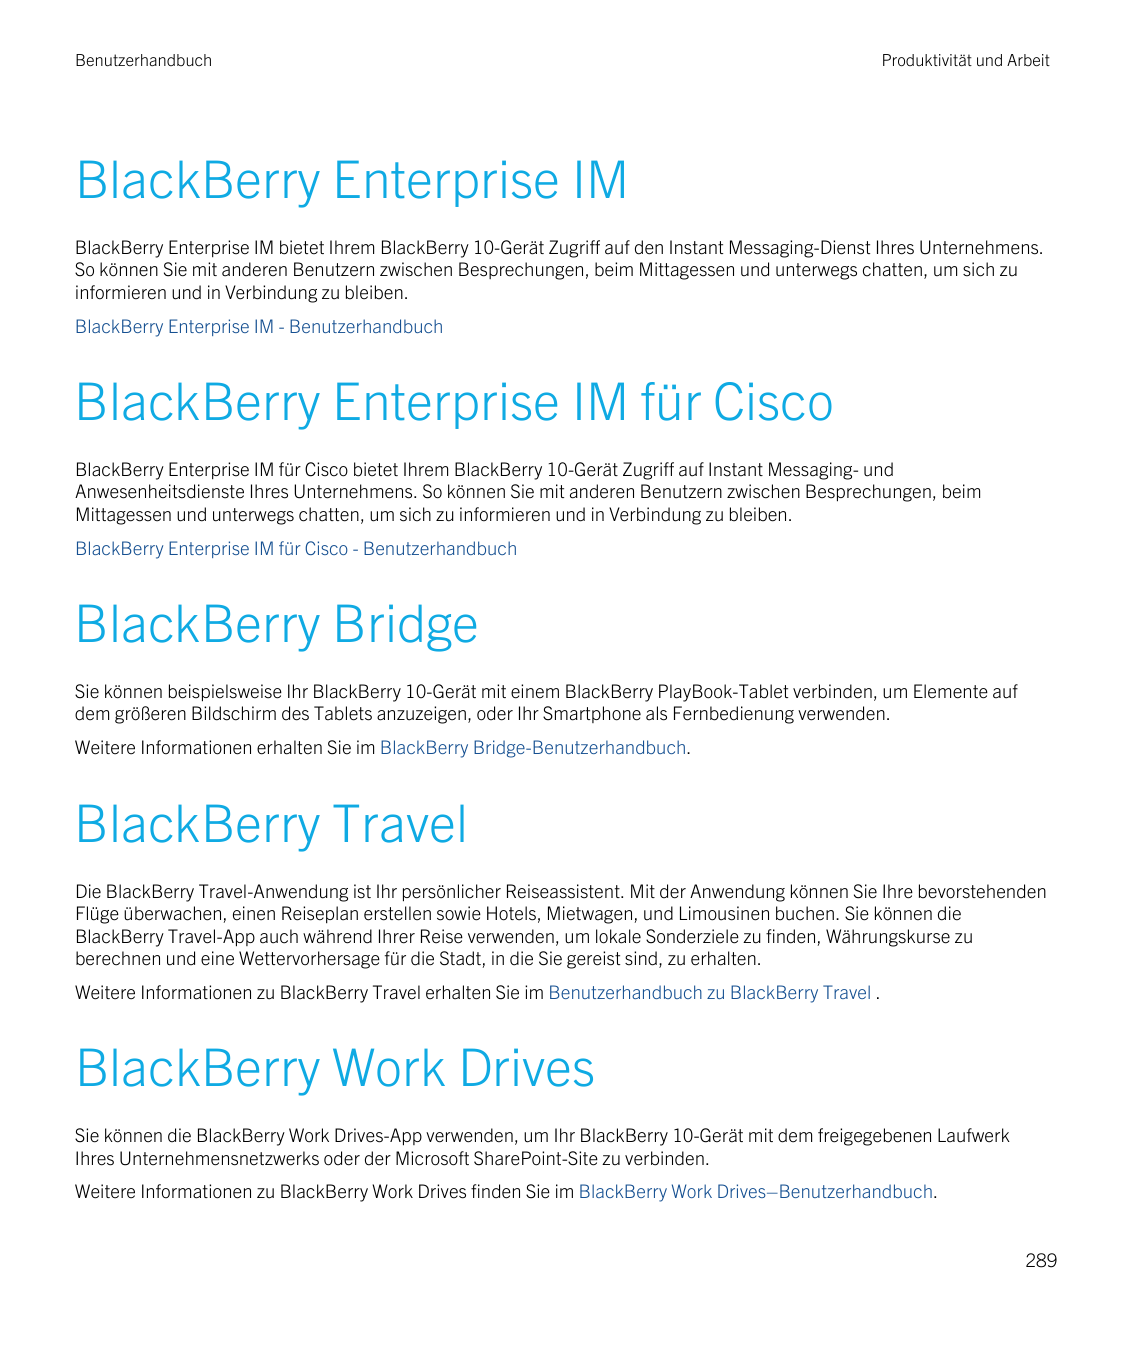 BenutzerhandbuchProduktivität und ArbeitBlackBerry Enterprise IMBlackBerry Enterprise IM bietet Ihrem BlackBerry 10-Gerät Zugrif